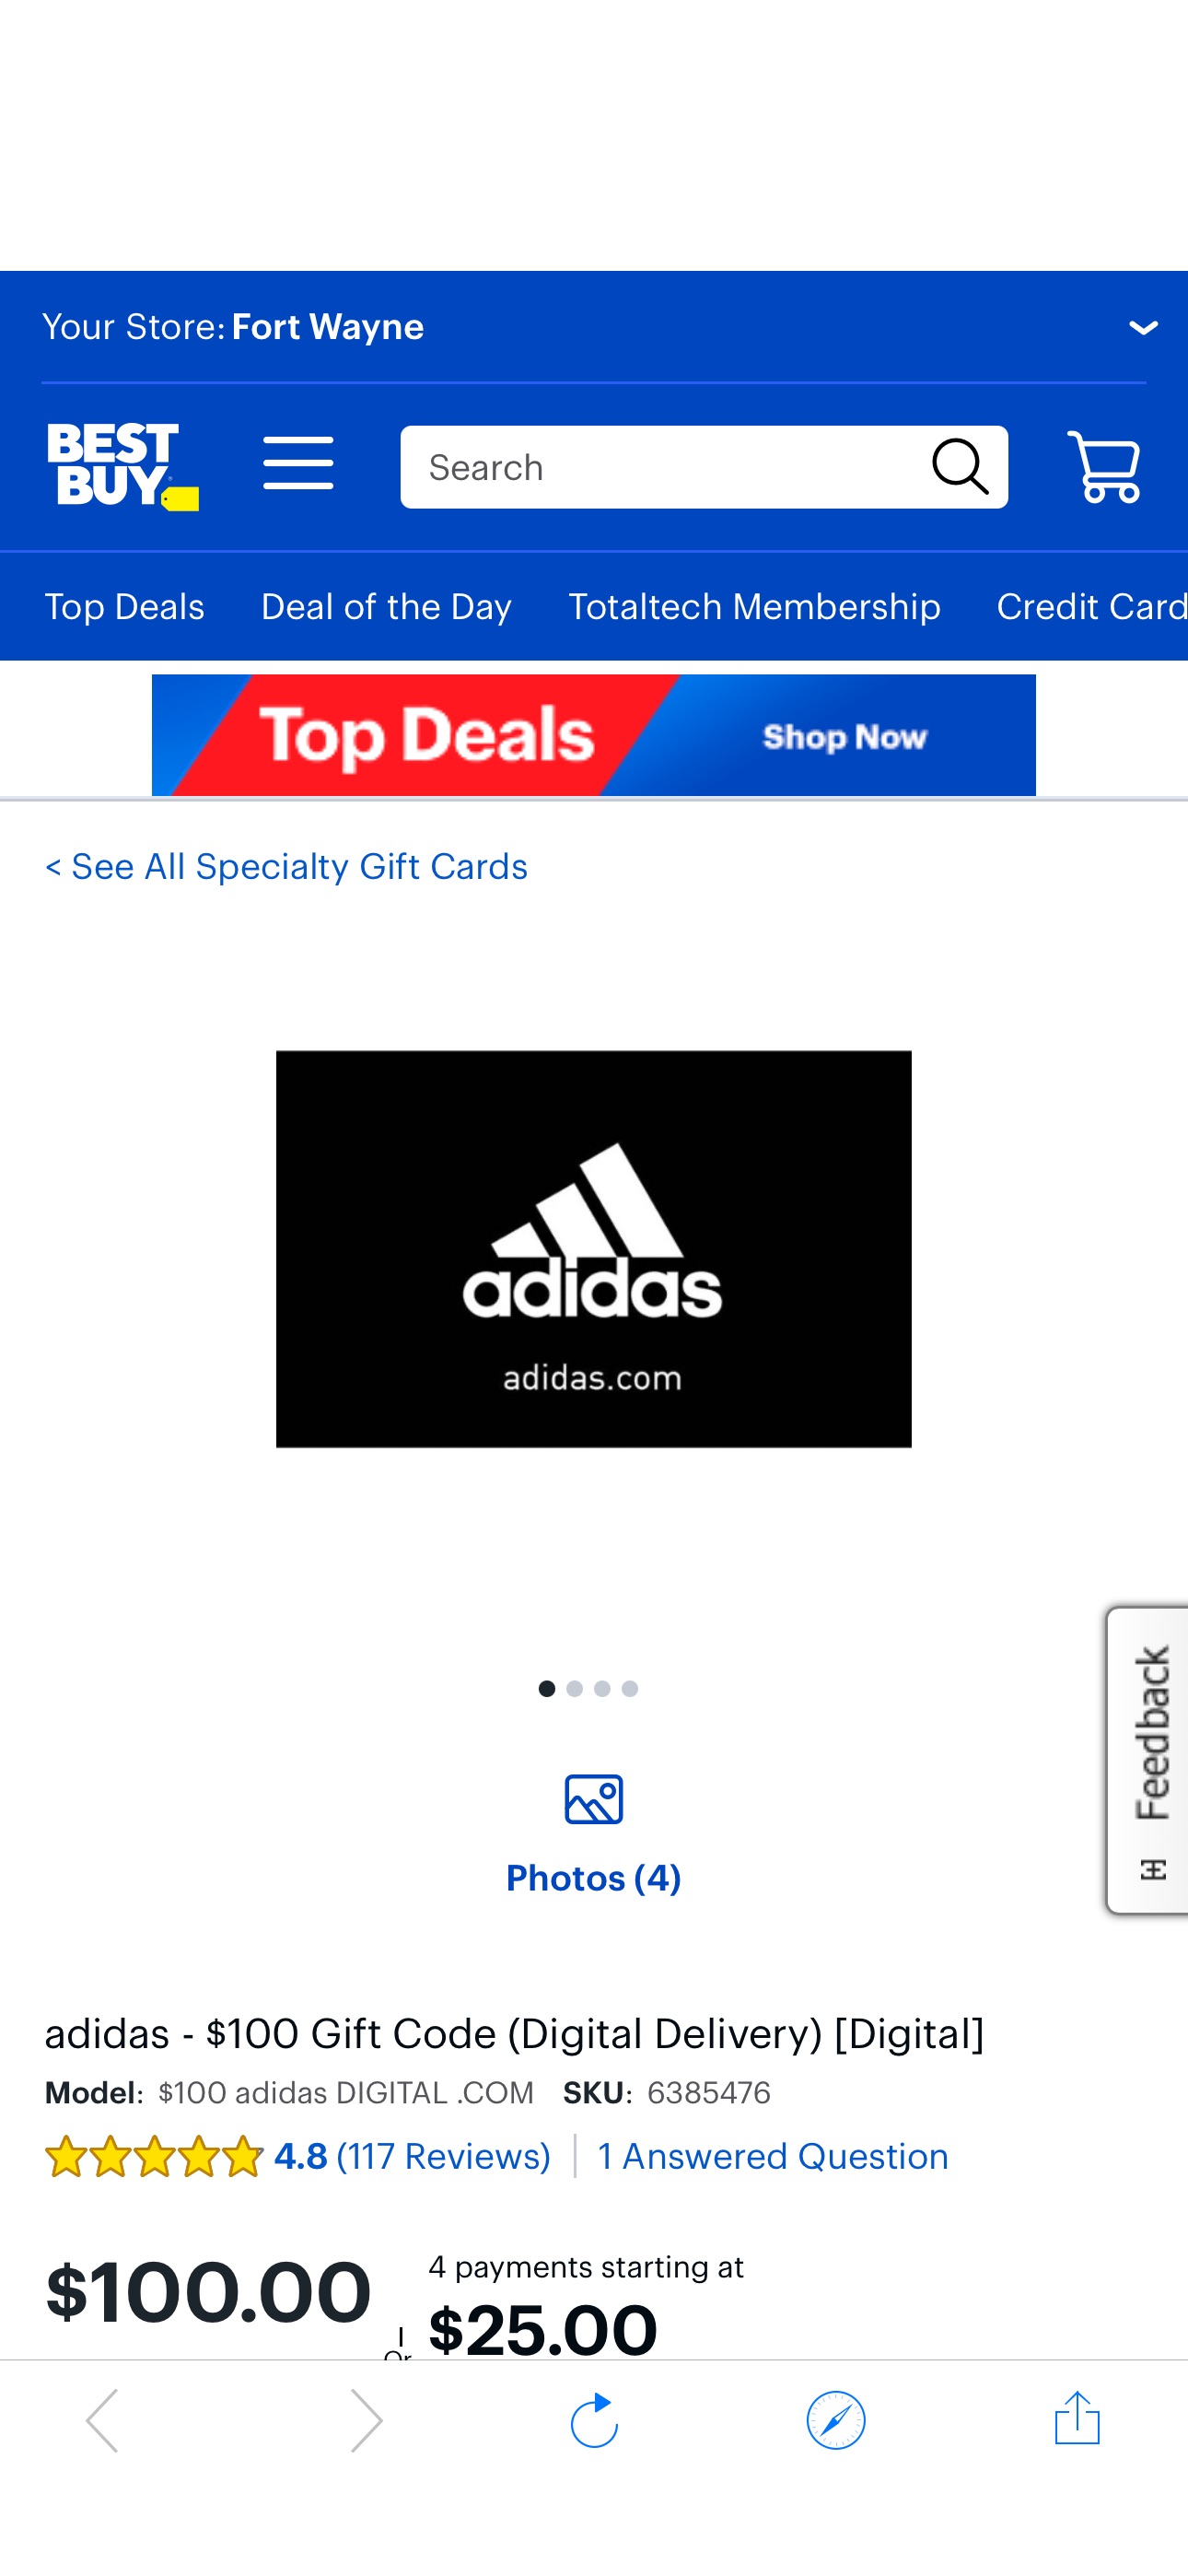 adidas $100 Gift Code (Digital Delivery) [Digital] $100 adidas DIGITAL .COM - Best Buy